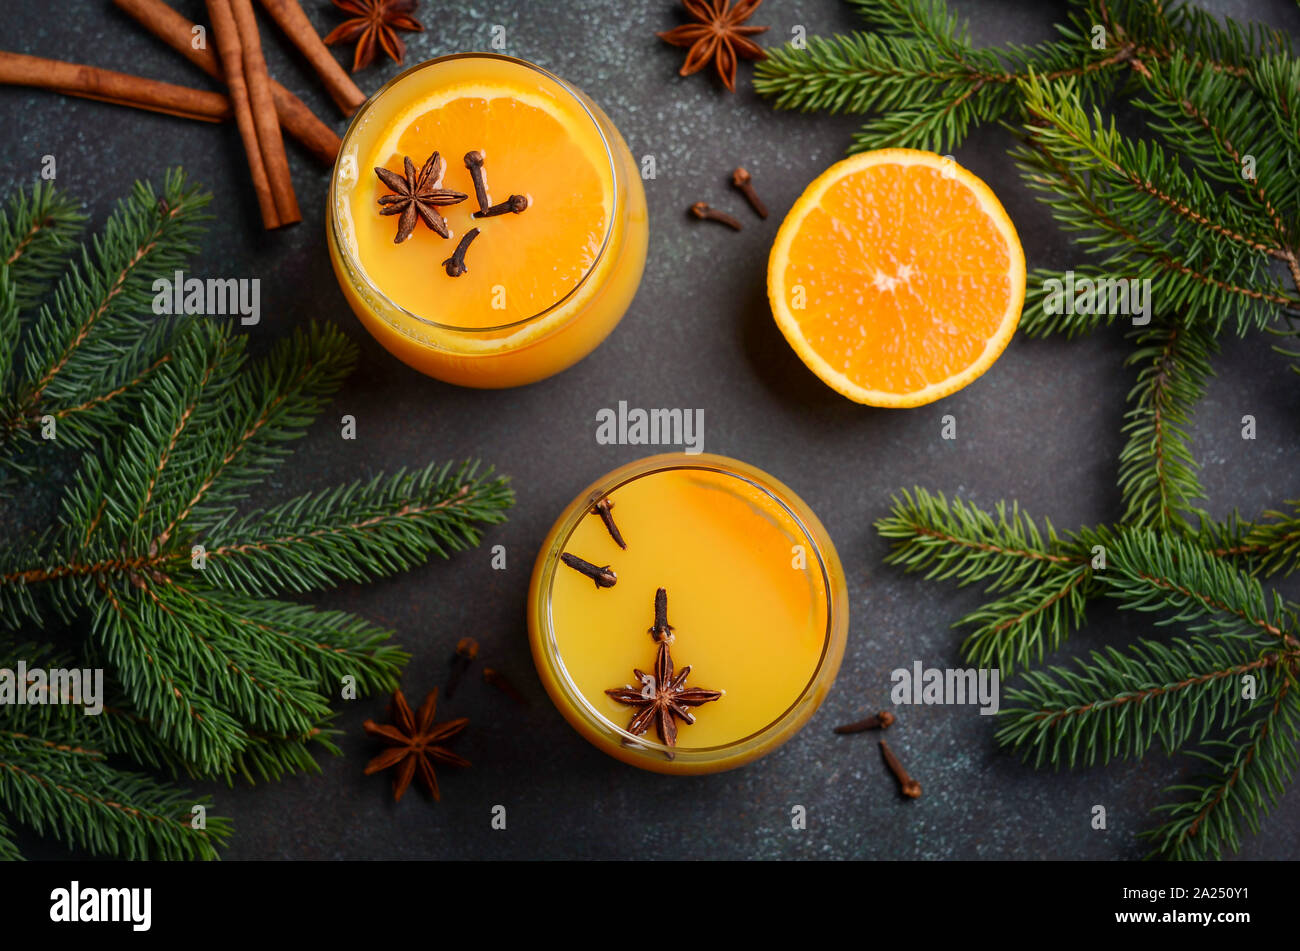 Automne Hiver chaud cocktail Punch orange épicé avec des épices. Concept de vacances décorée de branches de sapin et d'épices. Banque D'Images